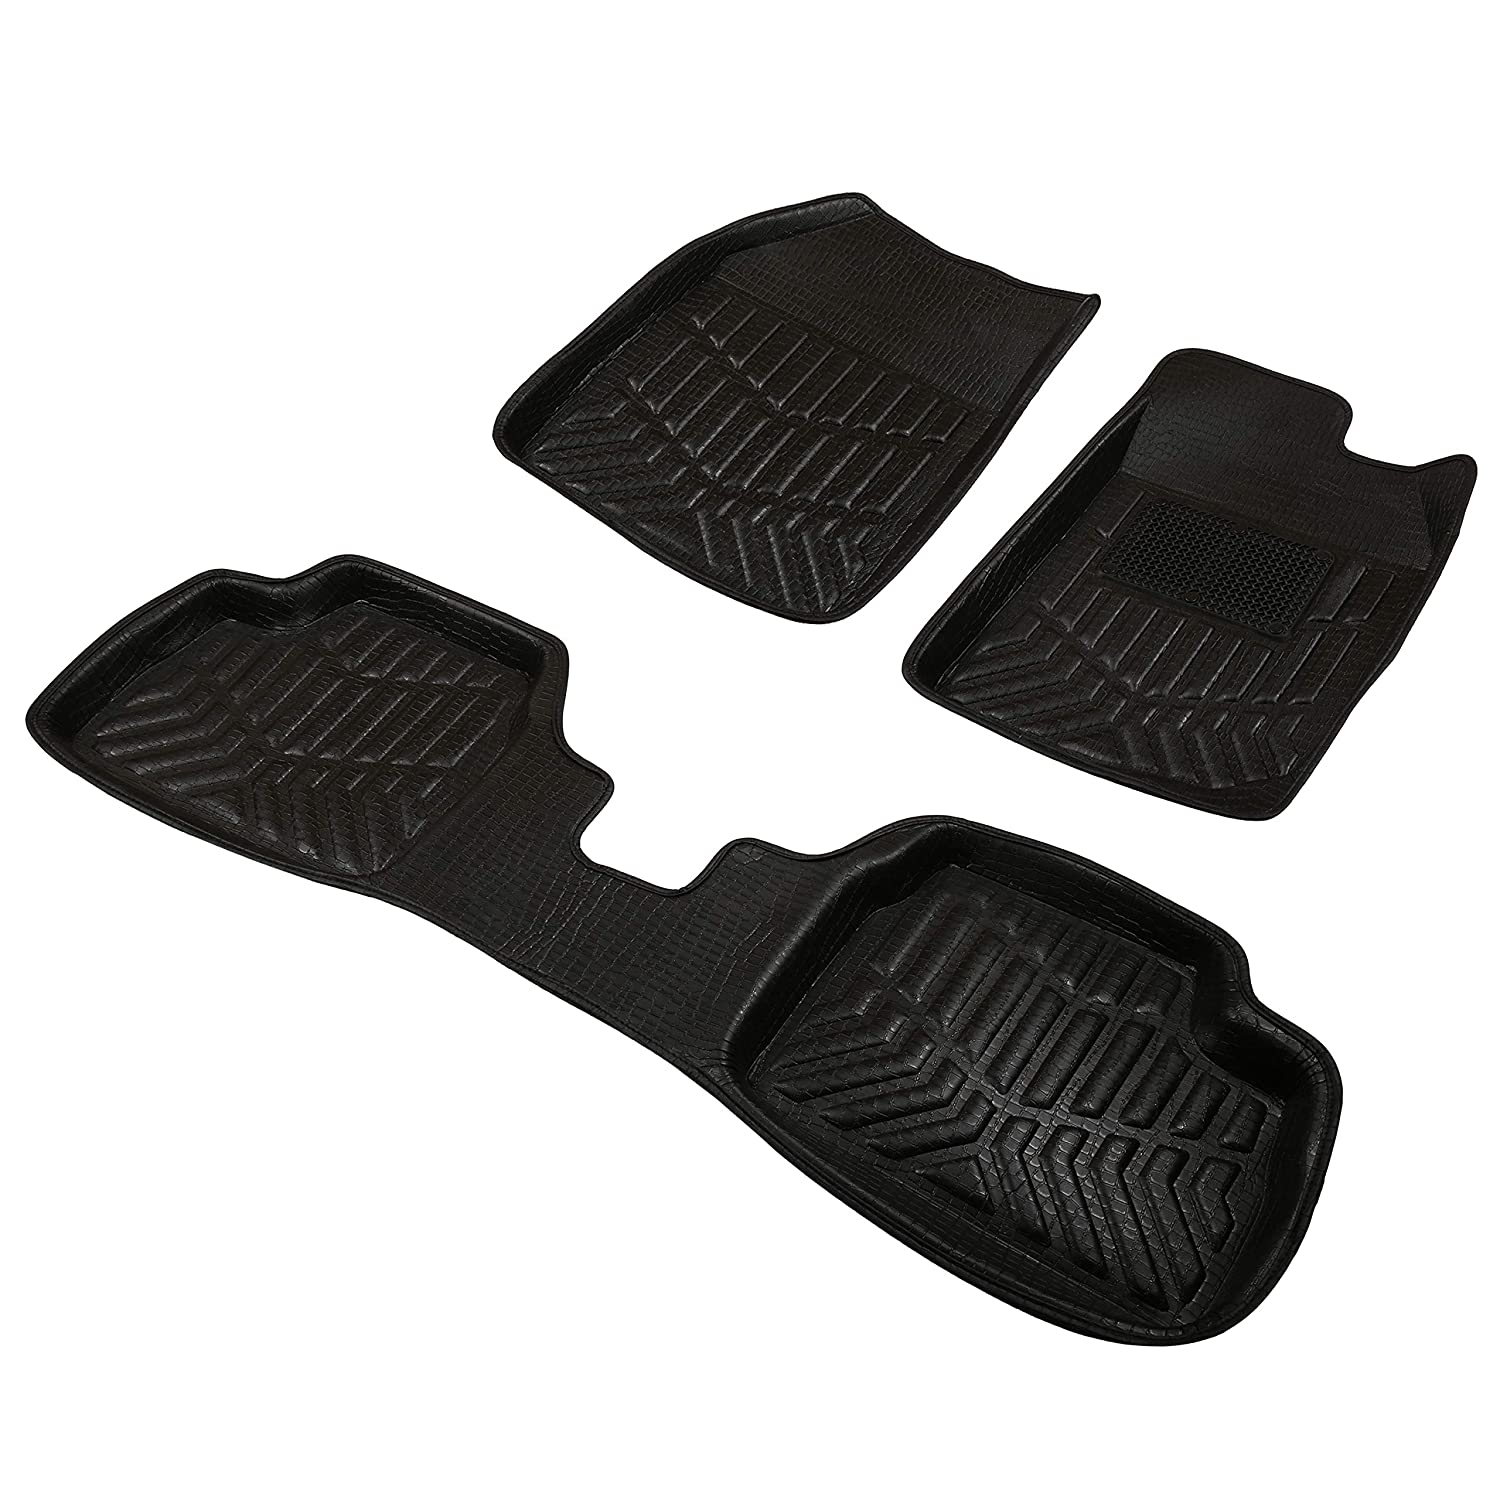 Drivn 3D Customised Car Floor Mat for Maruti Ritz - Black (Set of 3)